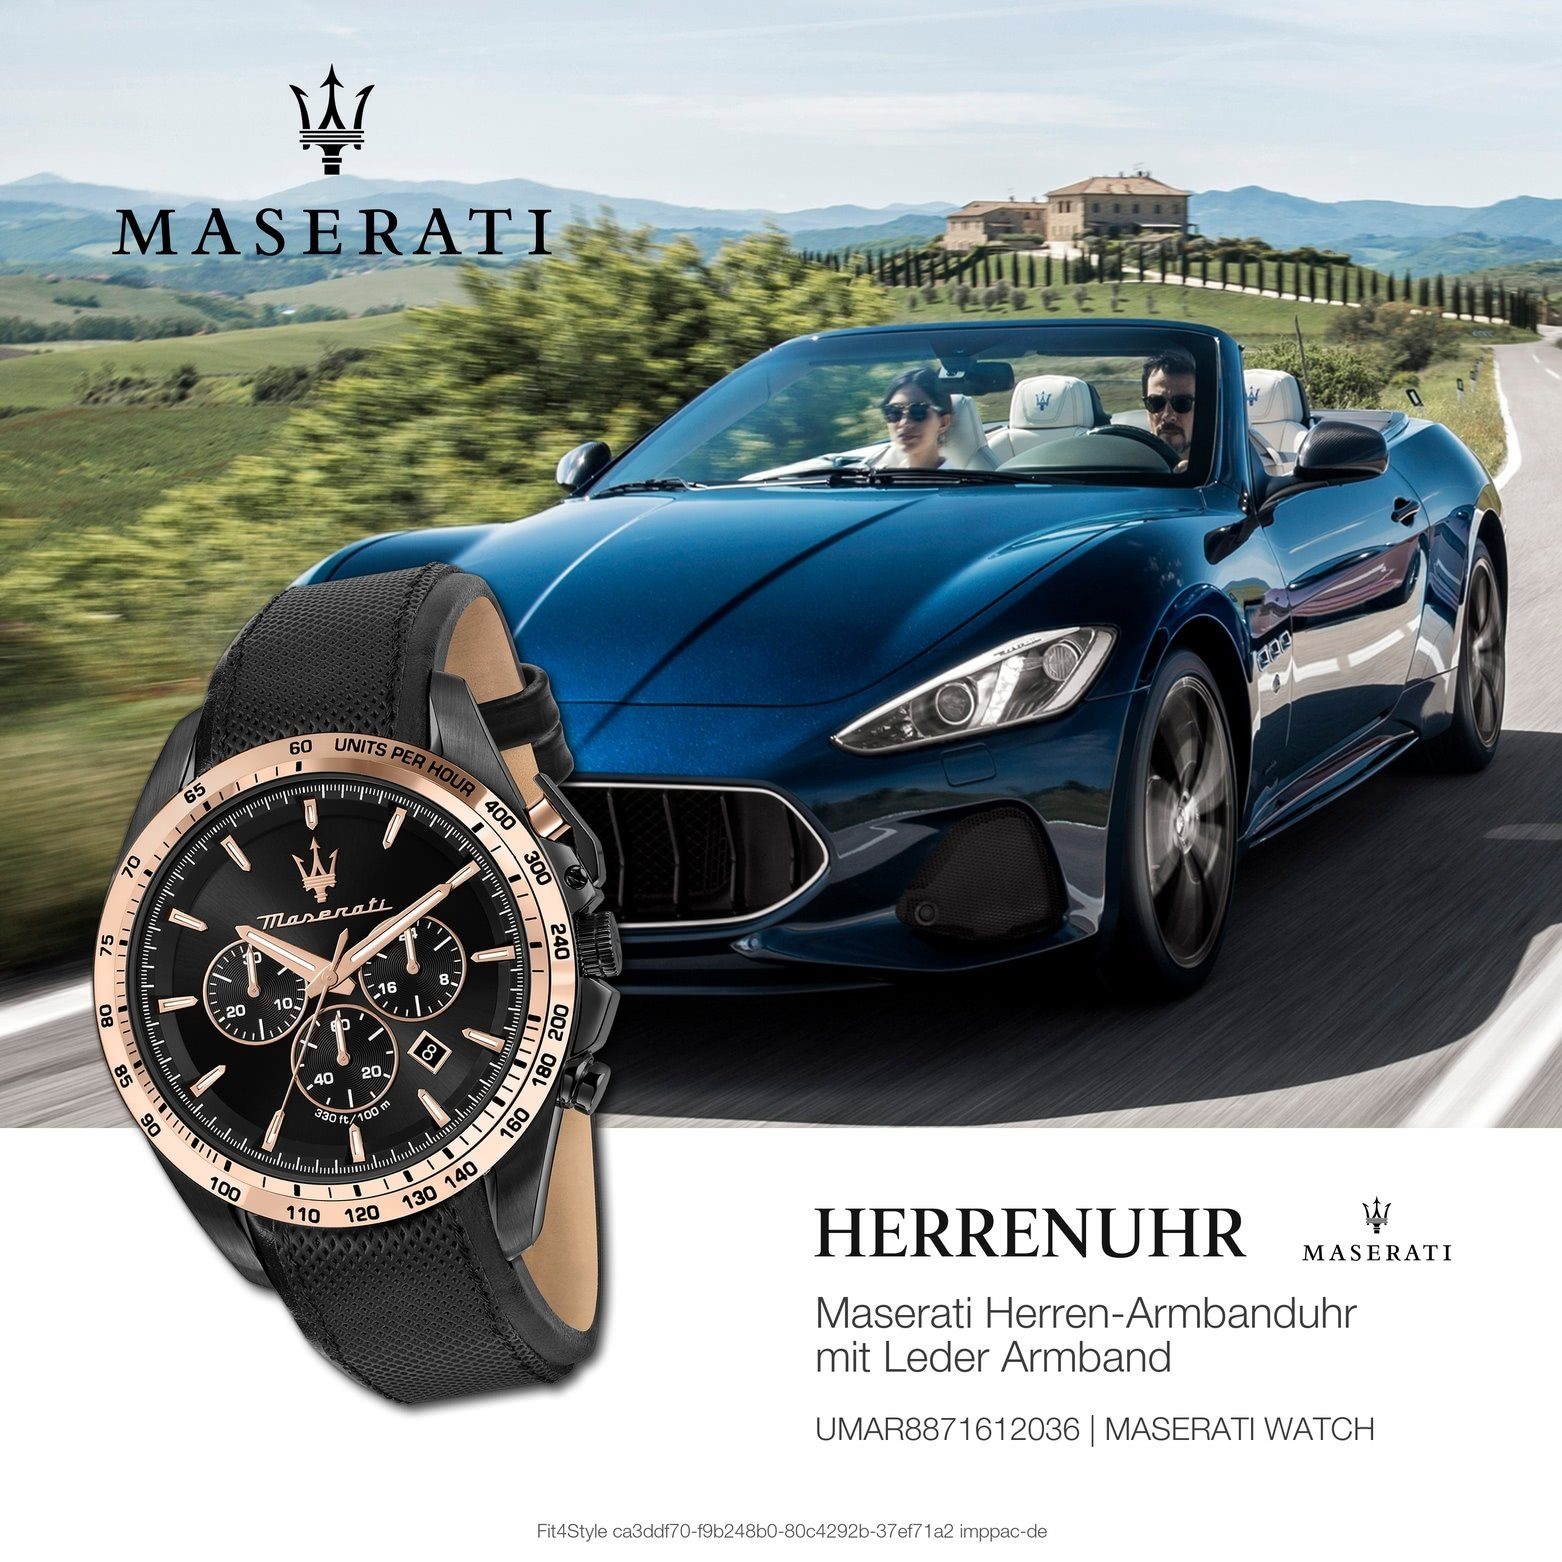 MASERATI Chronograph Made-In Chronograph, Lederarmband, Italy groß rund, 45mm) Maserati Herren Herrenuhr (ca